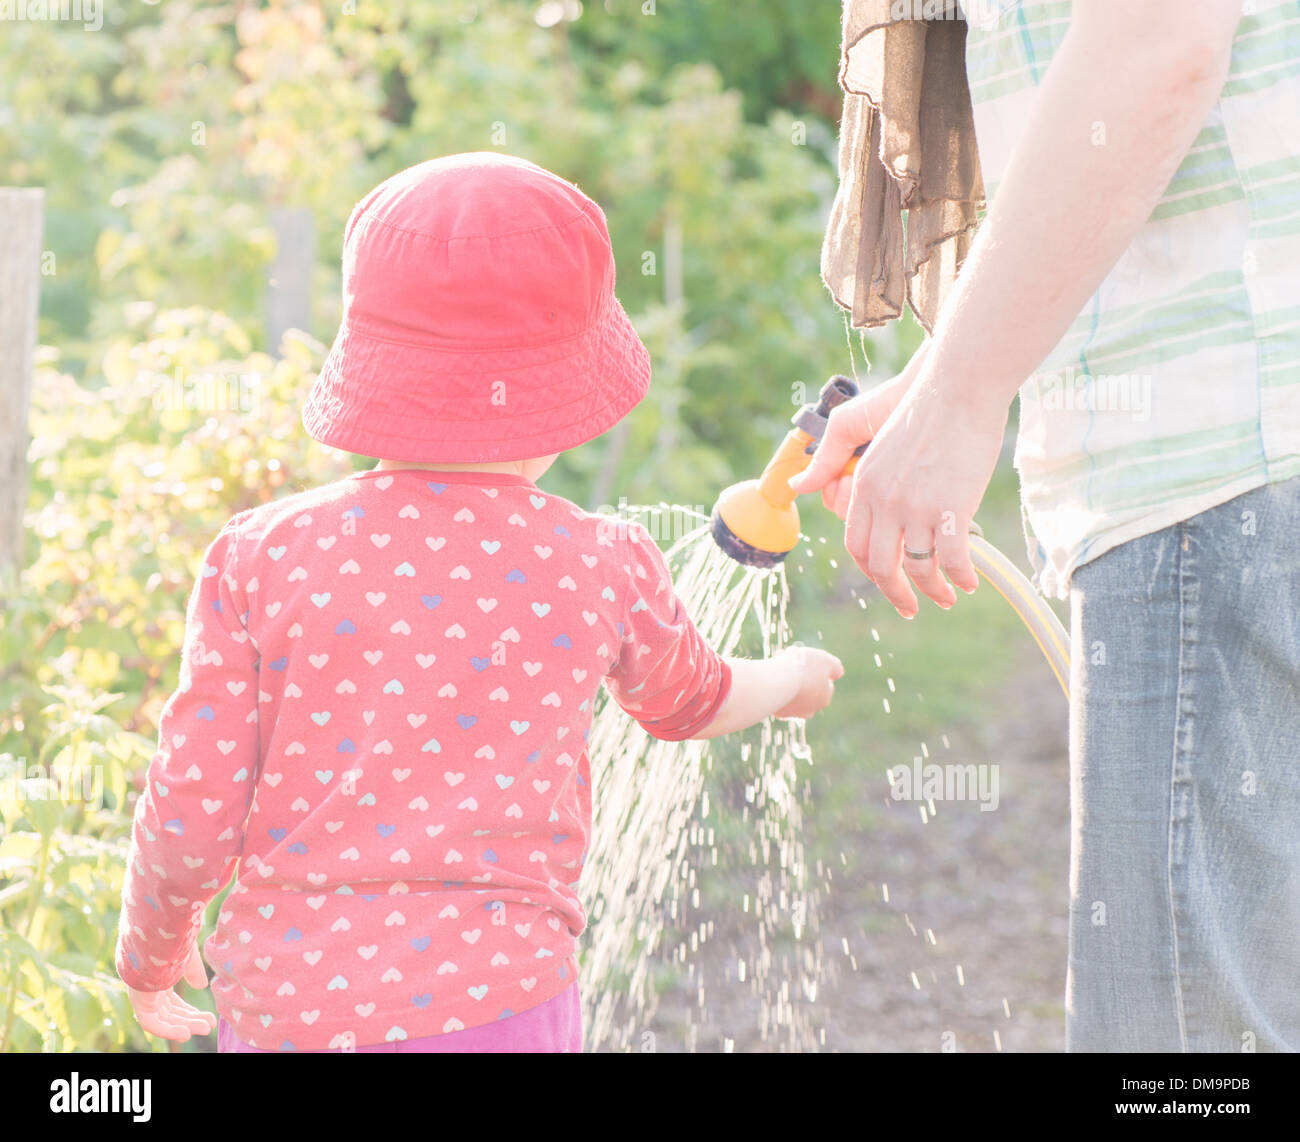 Stile di vita estate scena. Bambina giocando con il genitore nel giardino, sensazione di acqua dagli sprinkler Foto Stock